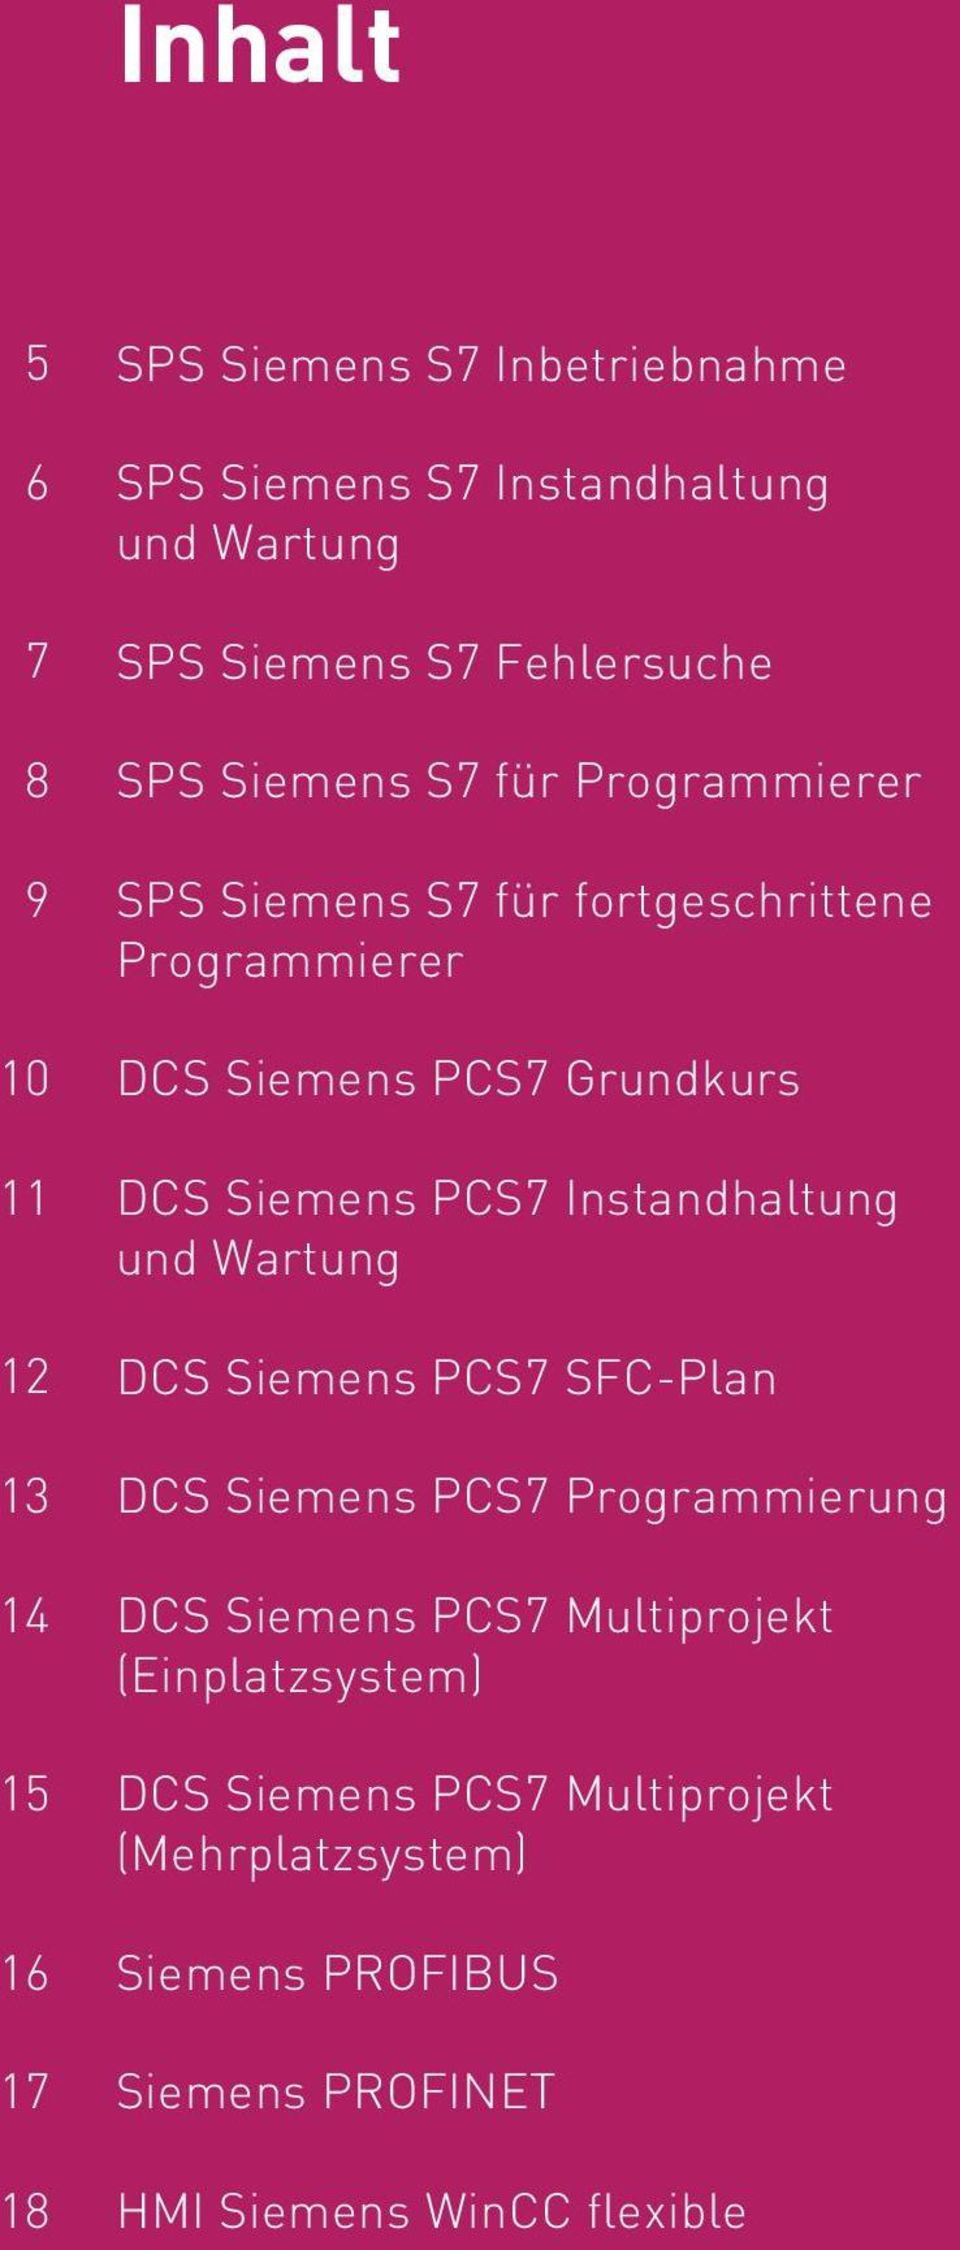 Siemens PCS7 Instandhaltung und Wartung DCS Siemens PCS7 SFC-Plan DCS Siemens PCS7 Programmierung DCS Siemens PCS7 Multiprojekt